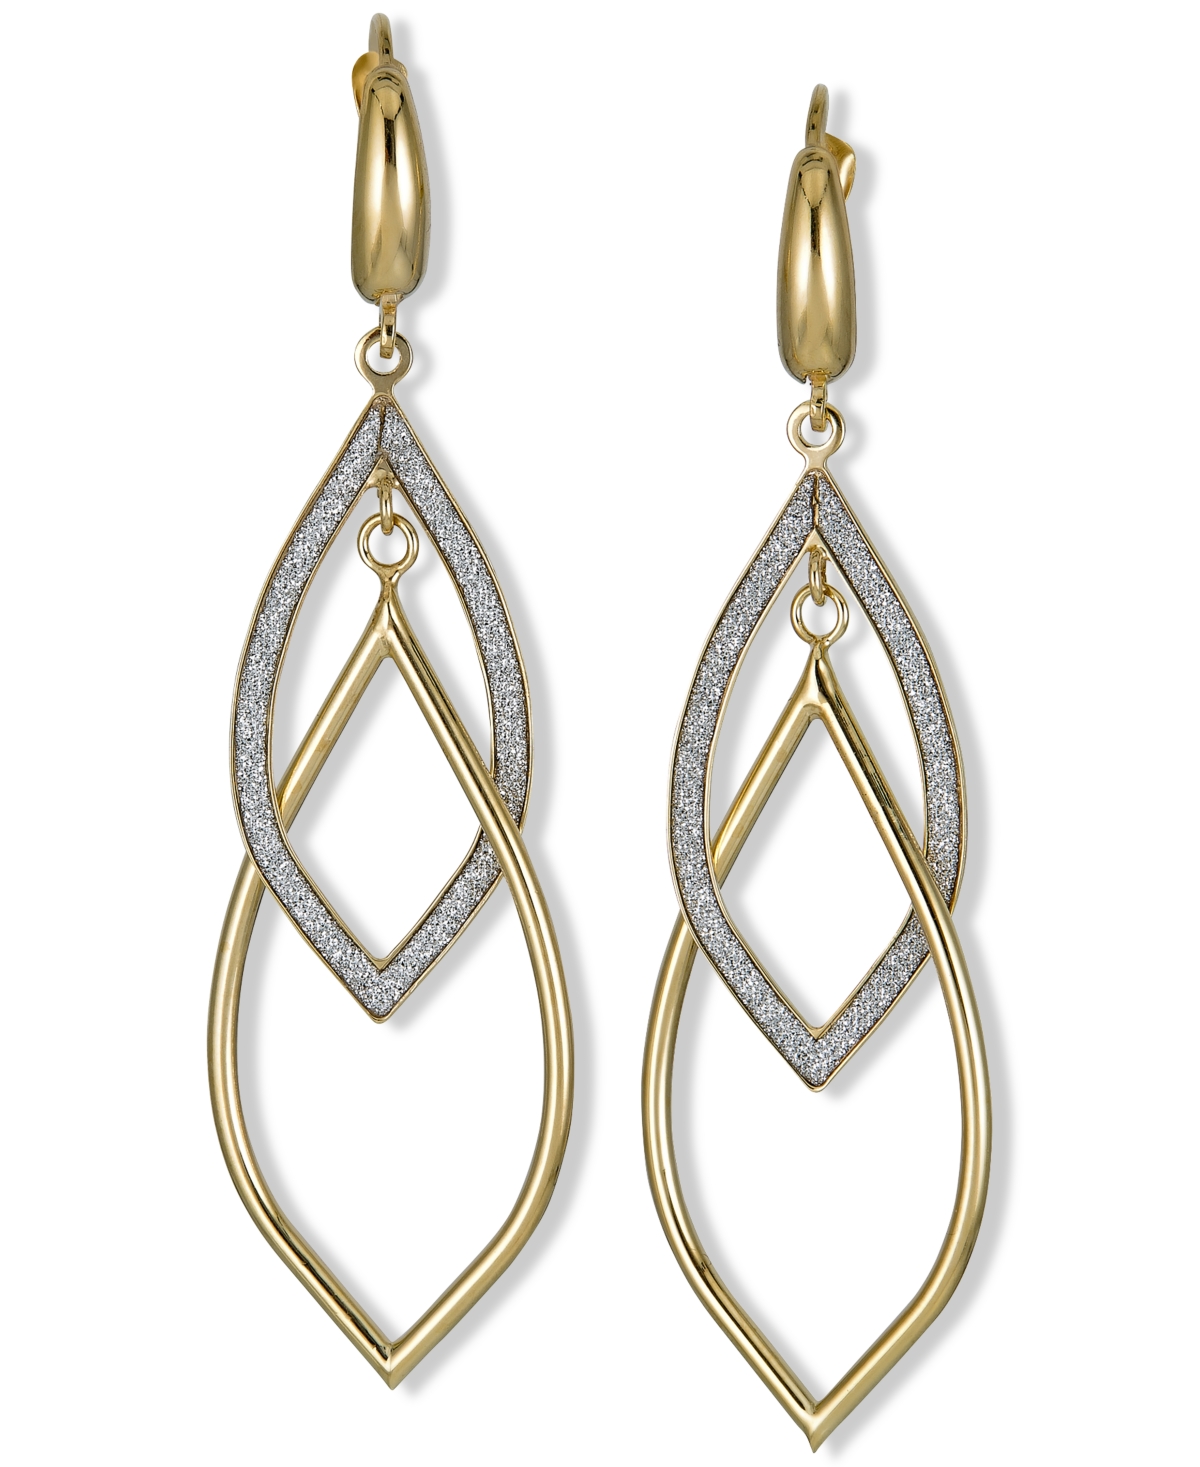 Glitter Orbital Drop Earrings in 10k Gold - Two-Tone